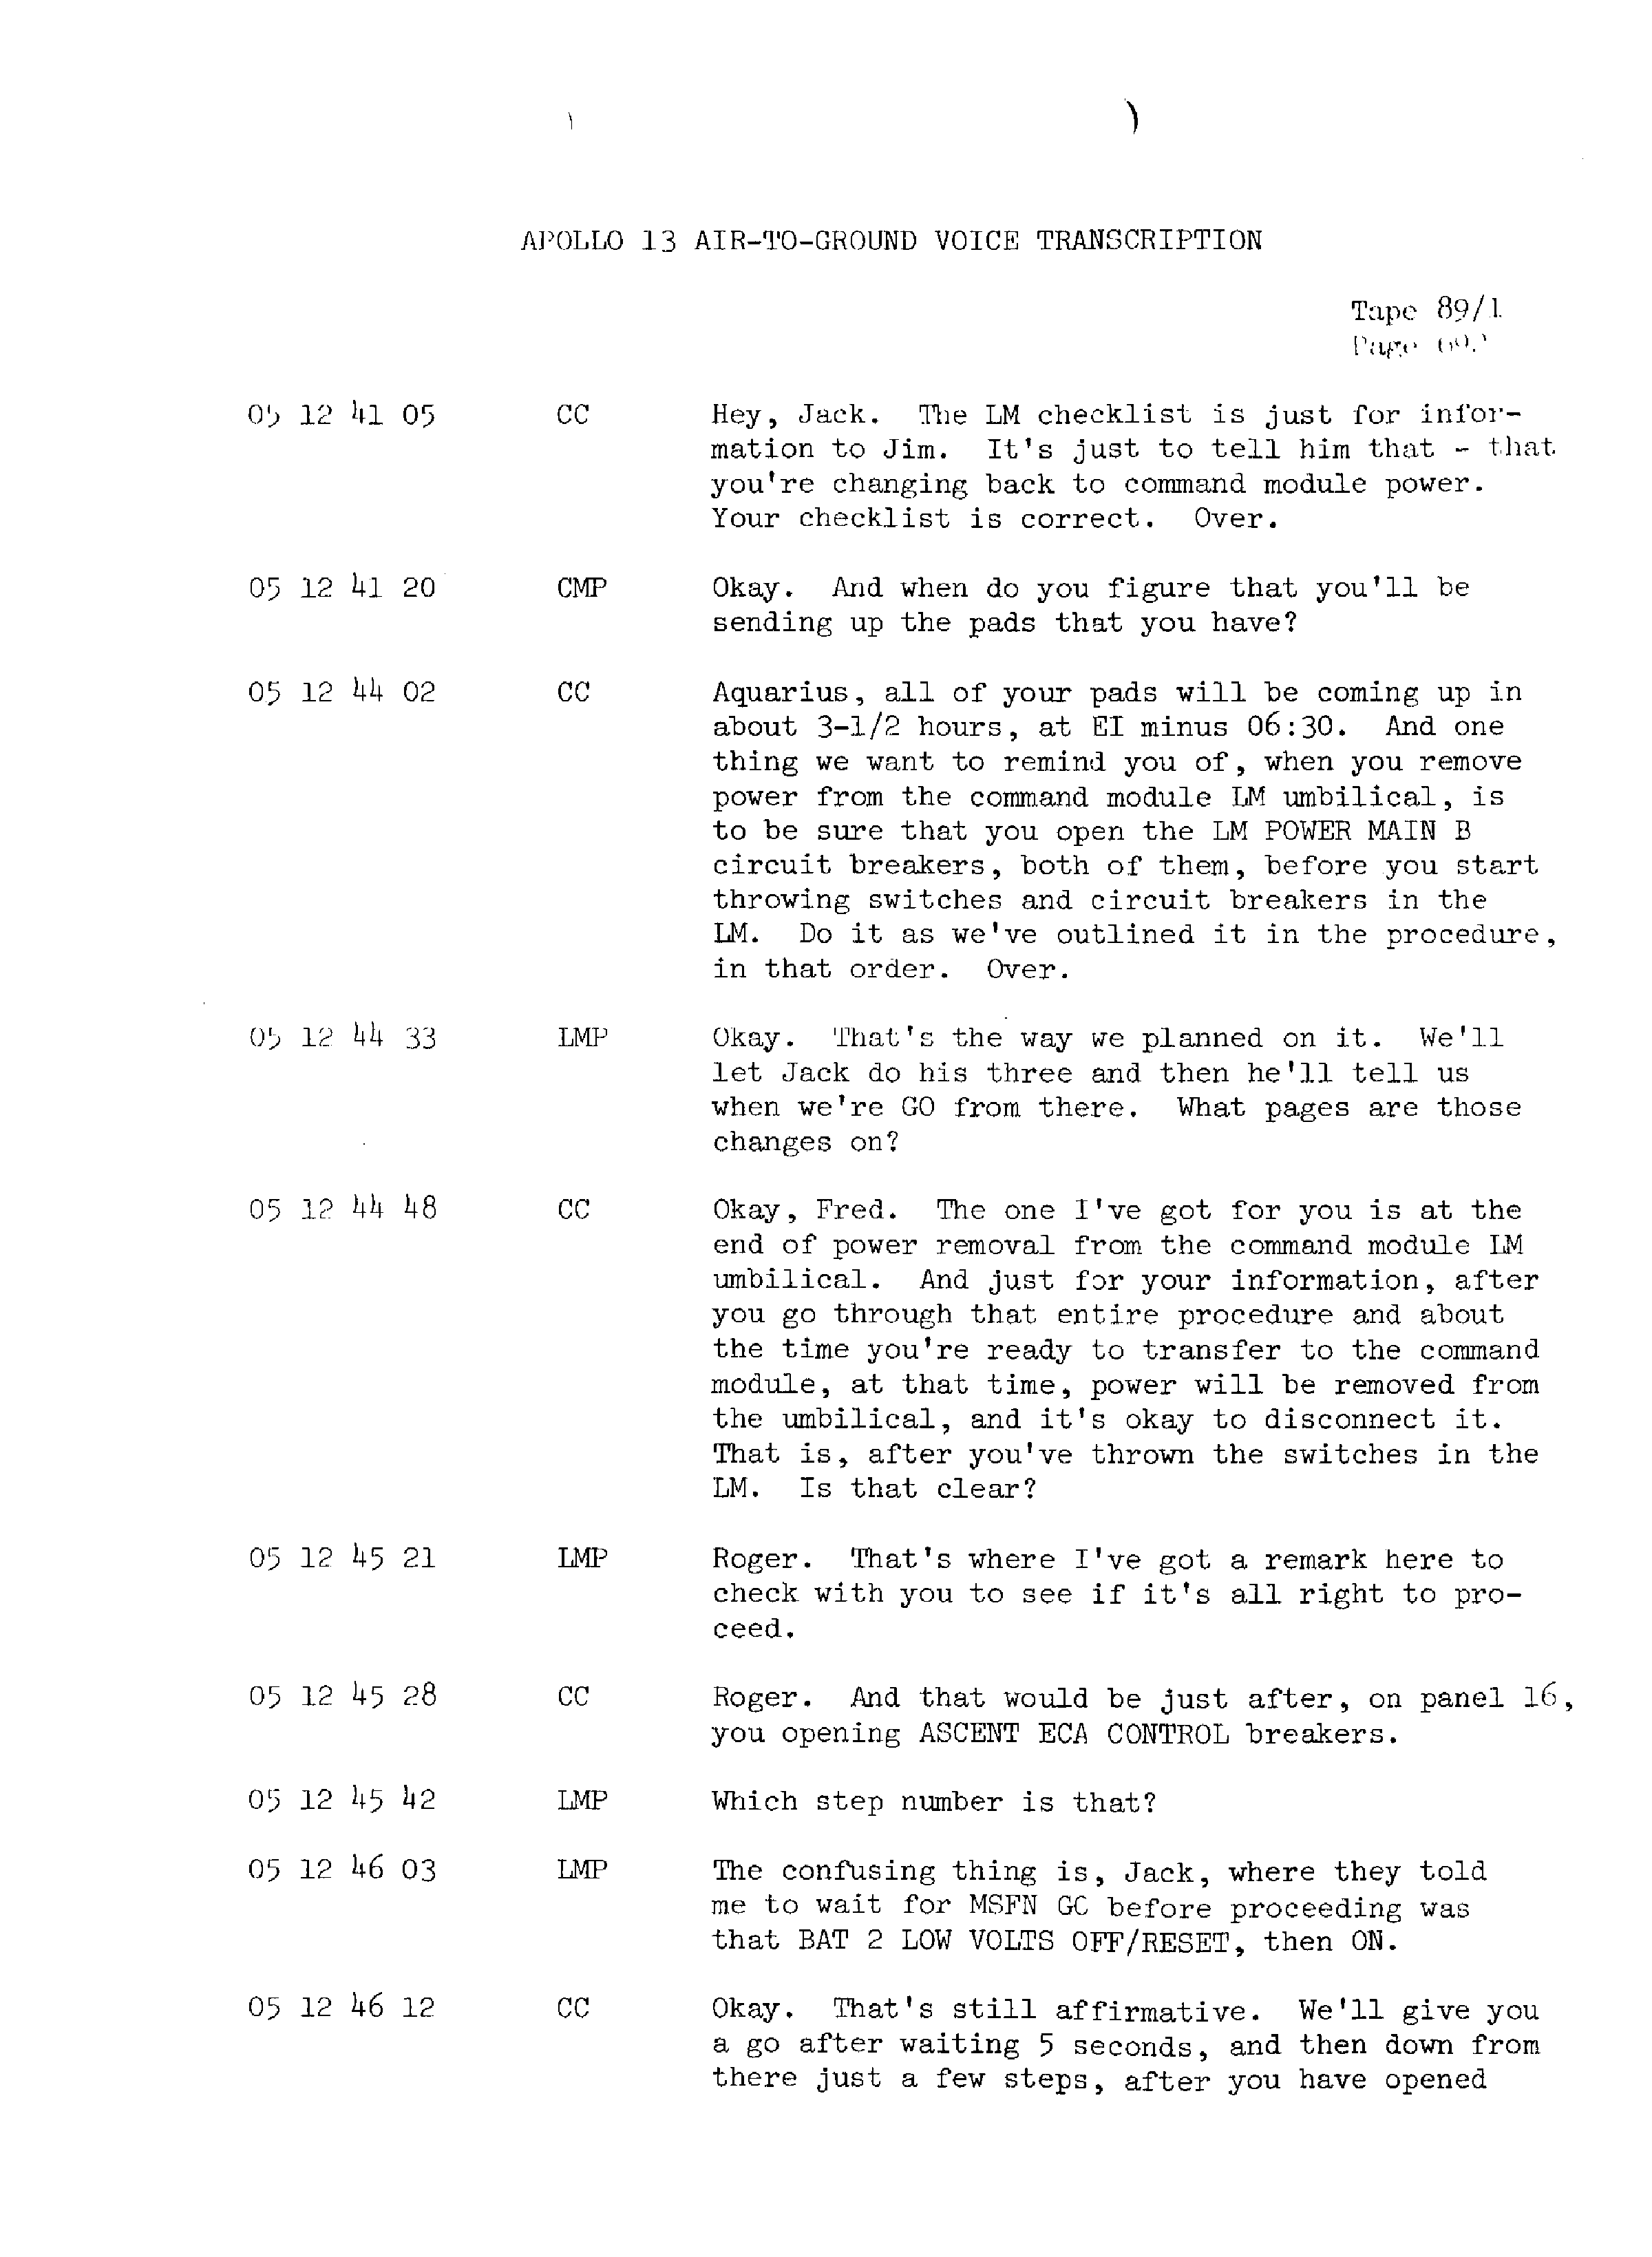 Page 699 of Apollo 13’s original transcript